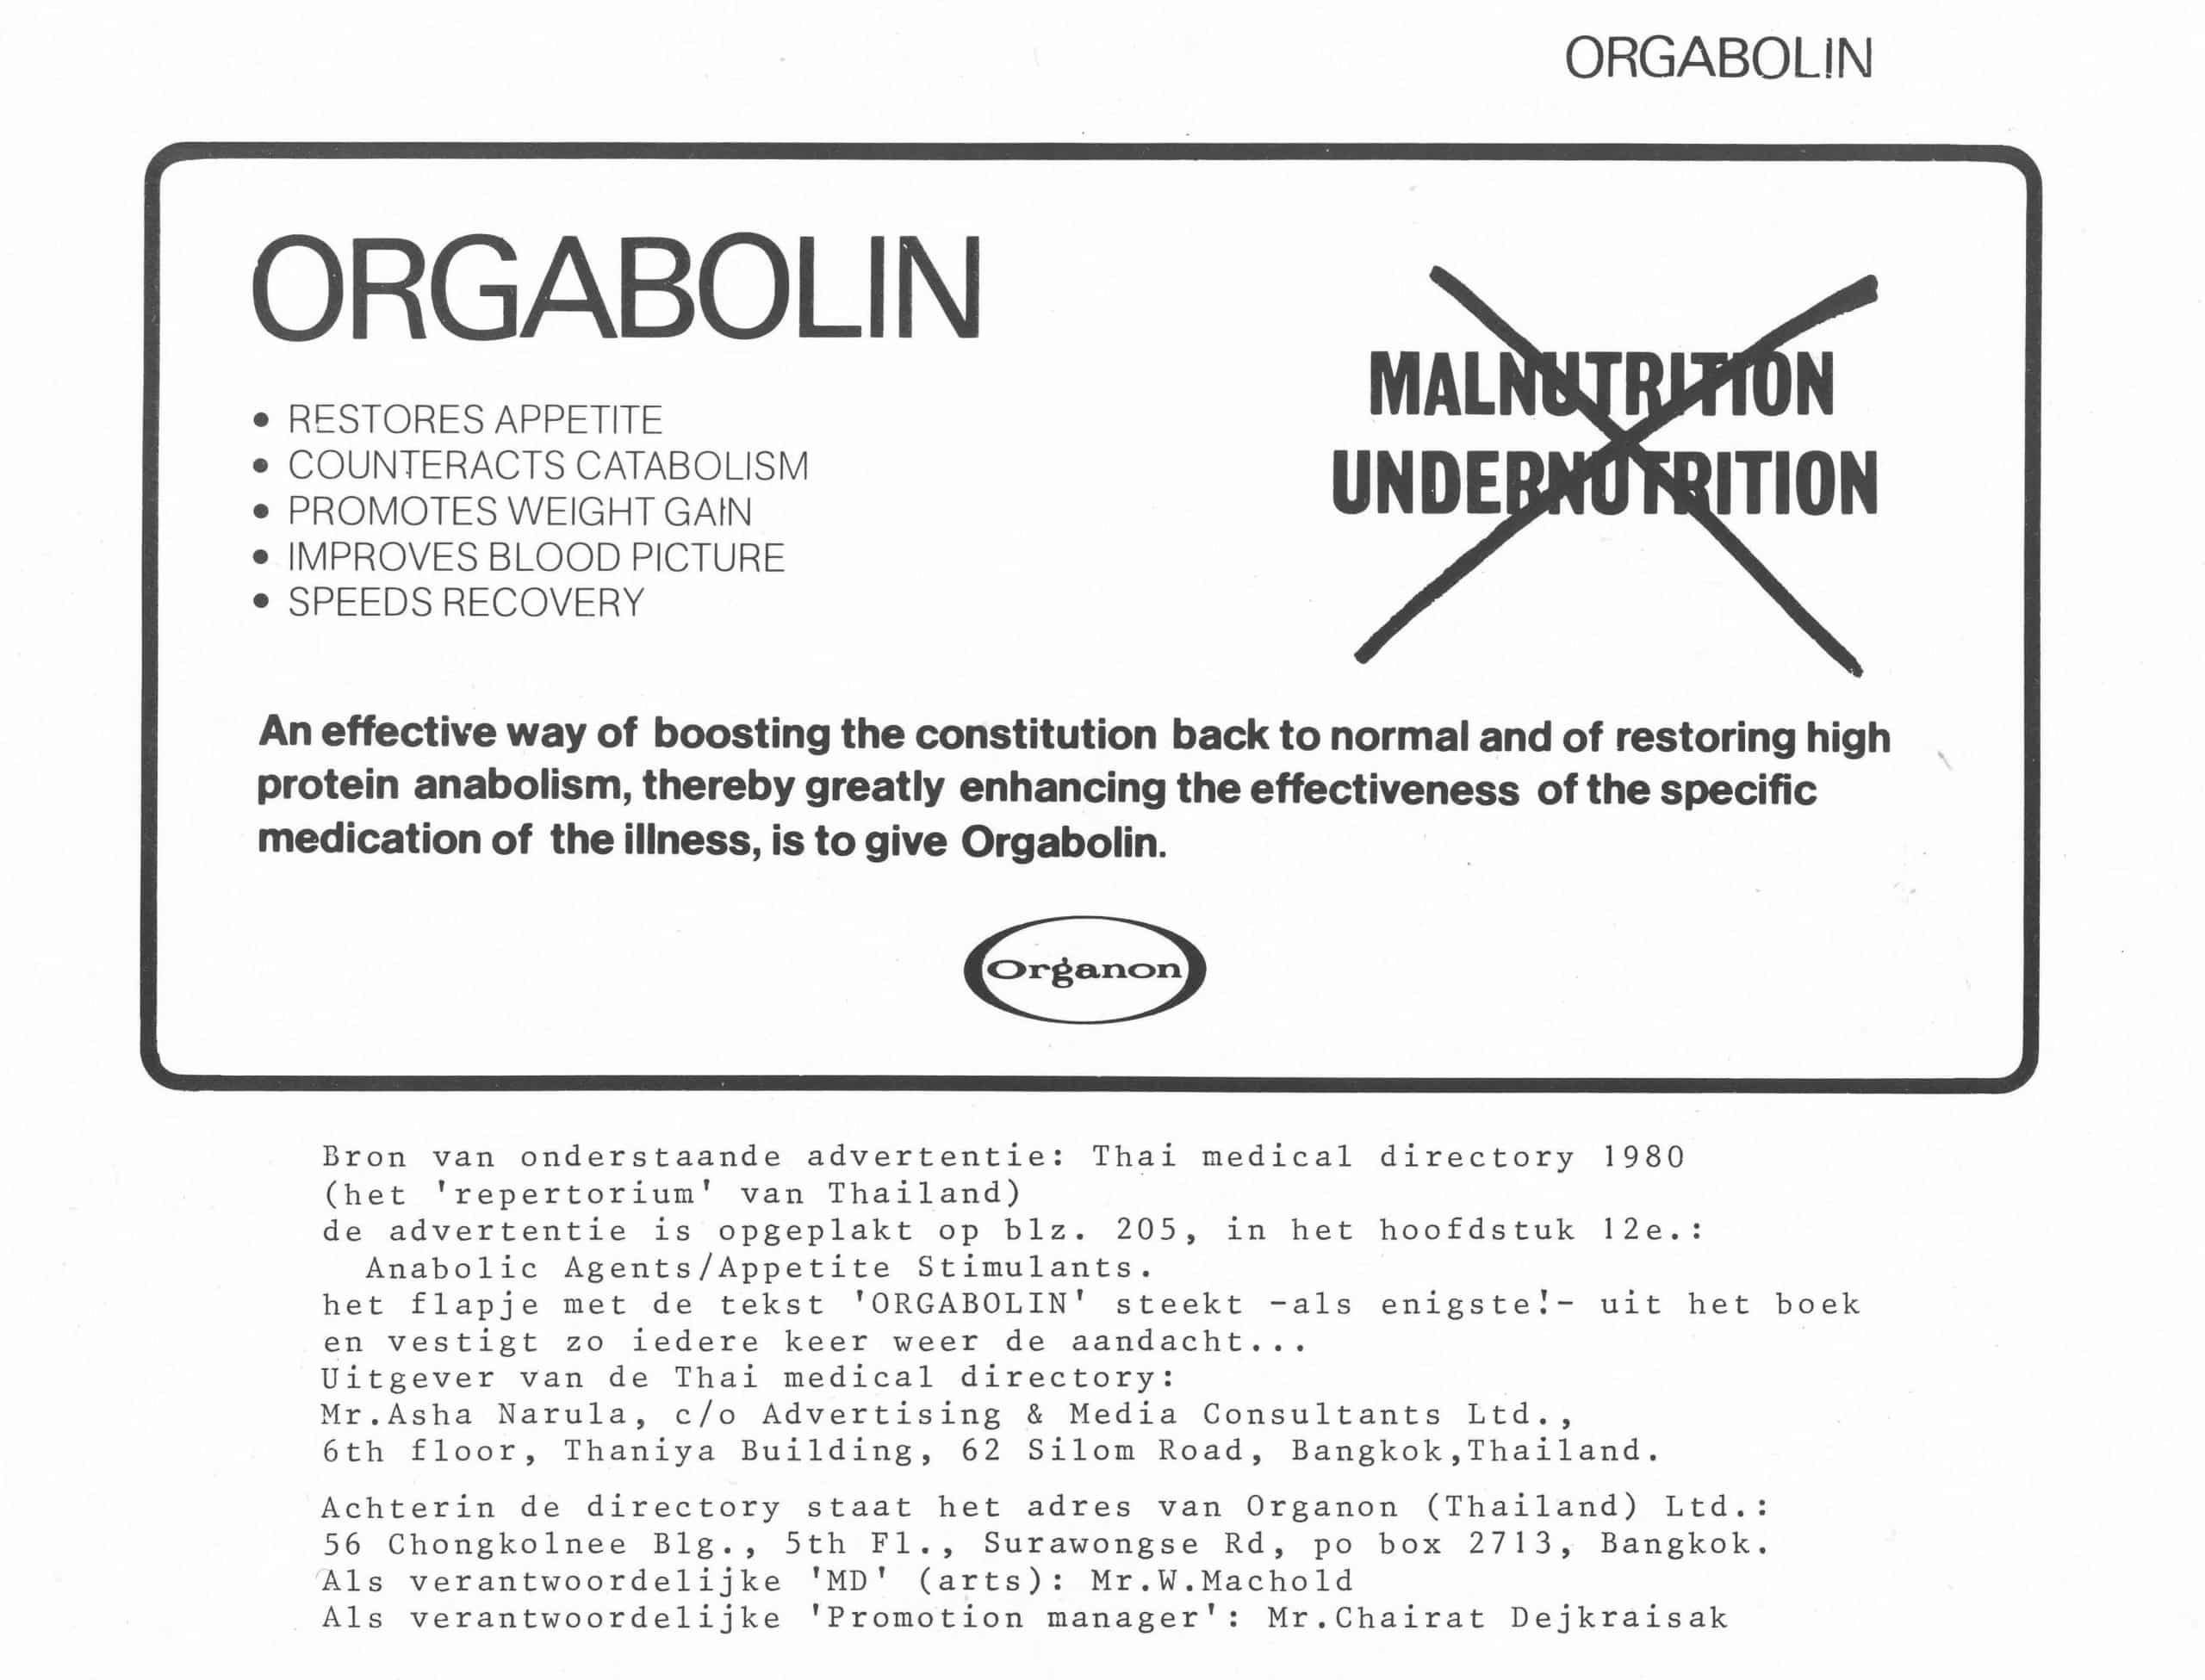 Advertorial of Organon, Orgabolin in 1981 - Advertentie van Organon, Orgabolin uit 1981